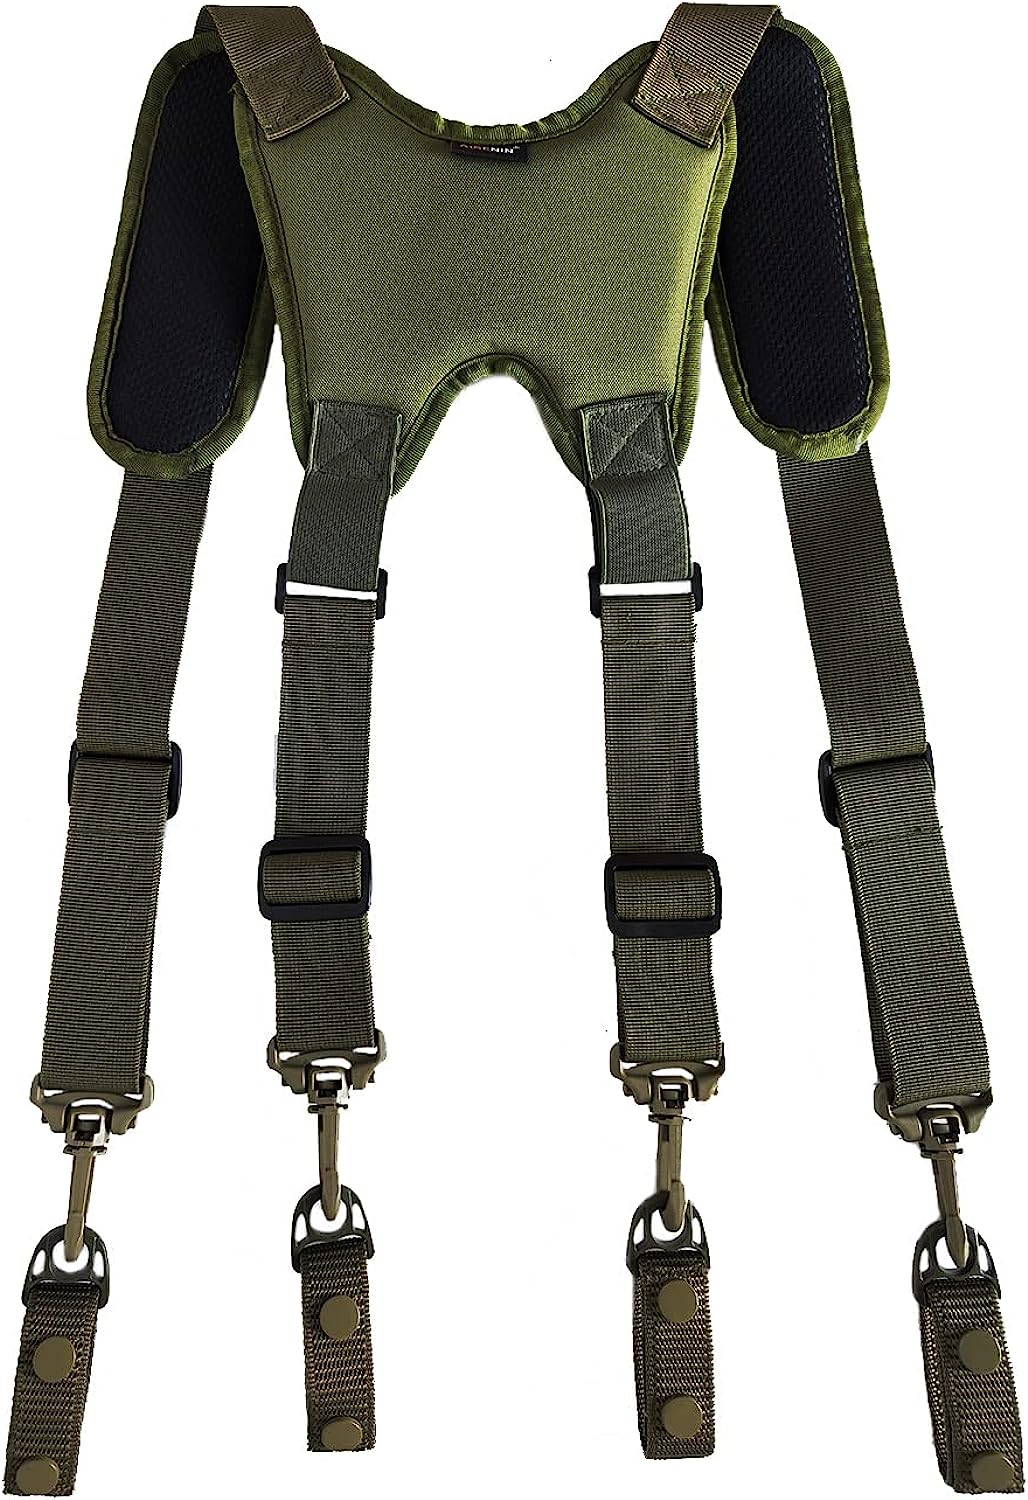 Army Suspenders WholeSale - Price List, Bulk Buy at